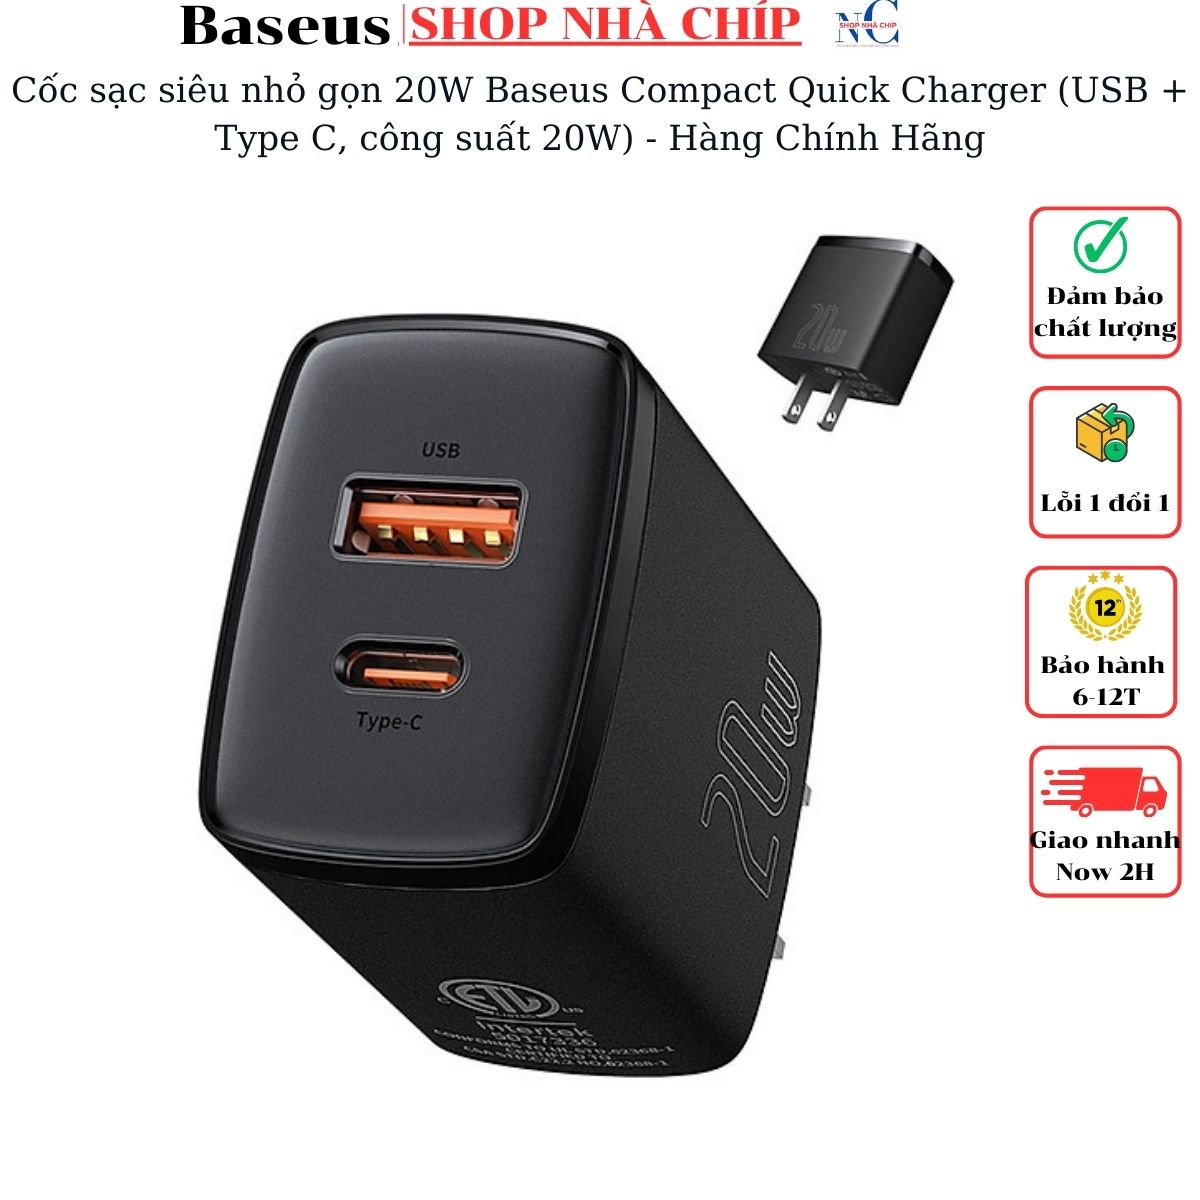 Cốc sạc siêu nhỏ gọn 20W Baseus Compact Quick Charger (USB + Type C, công suất 20W) - Hàng Chính Hãng 